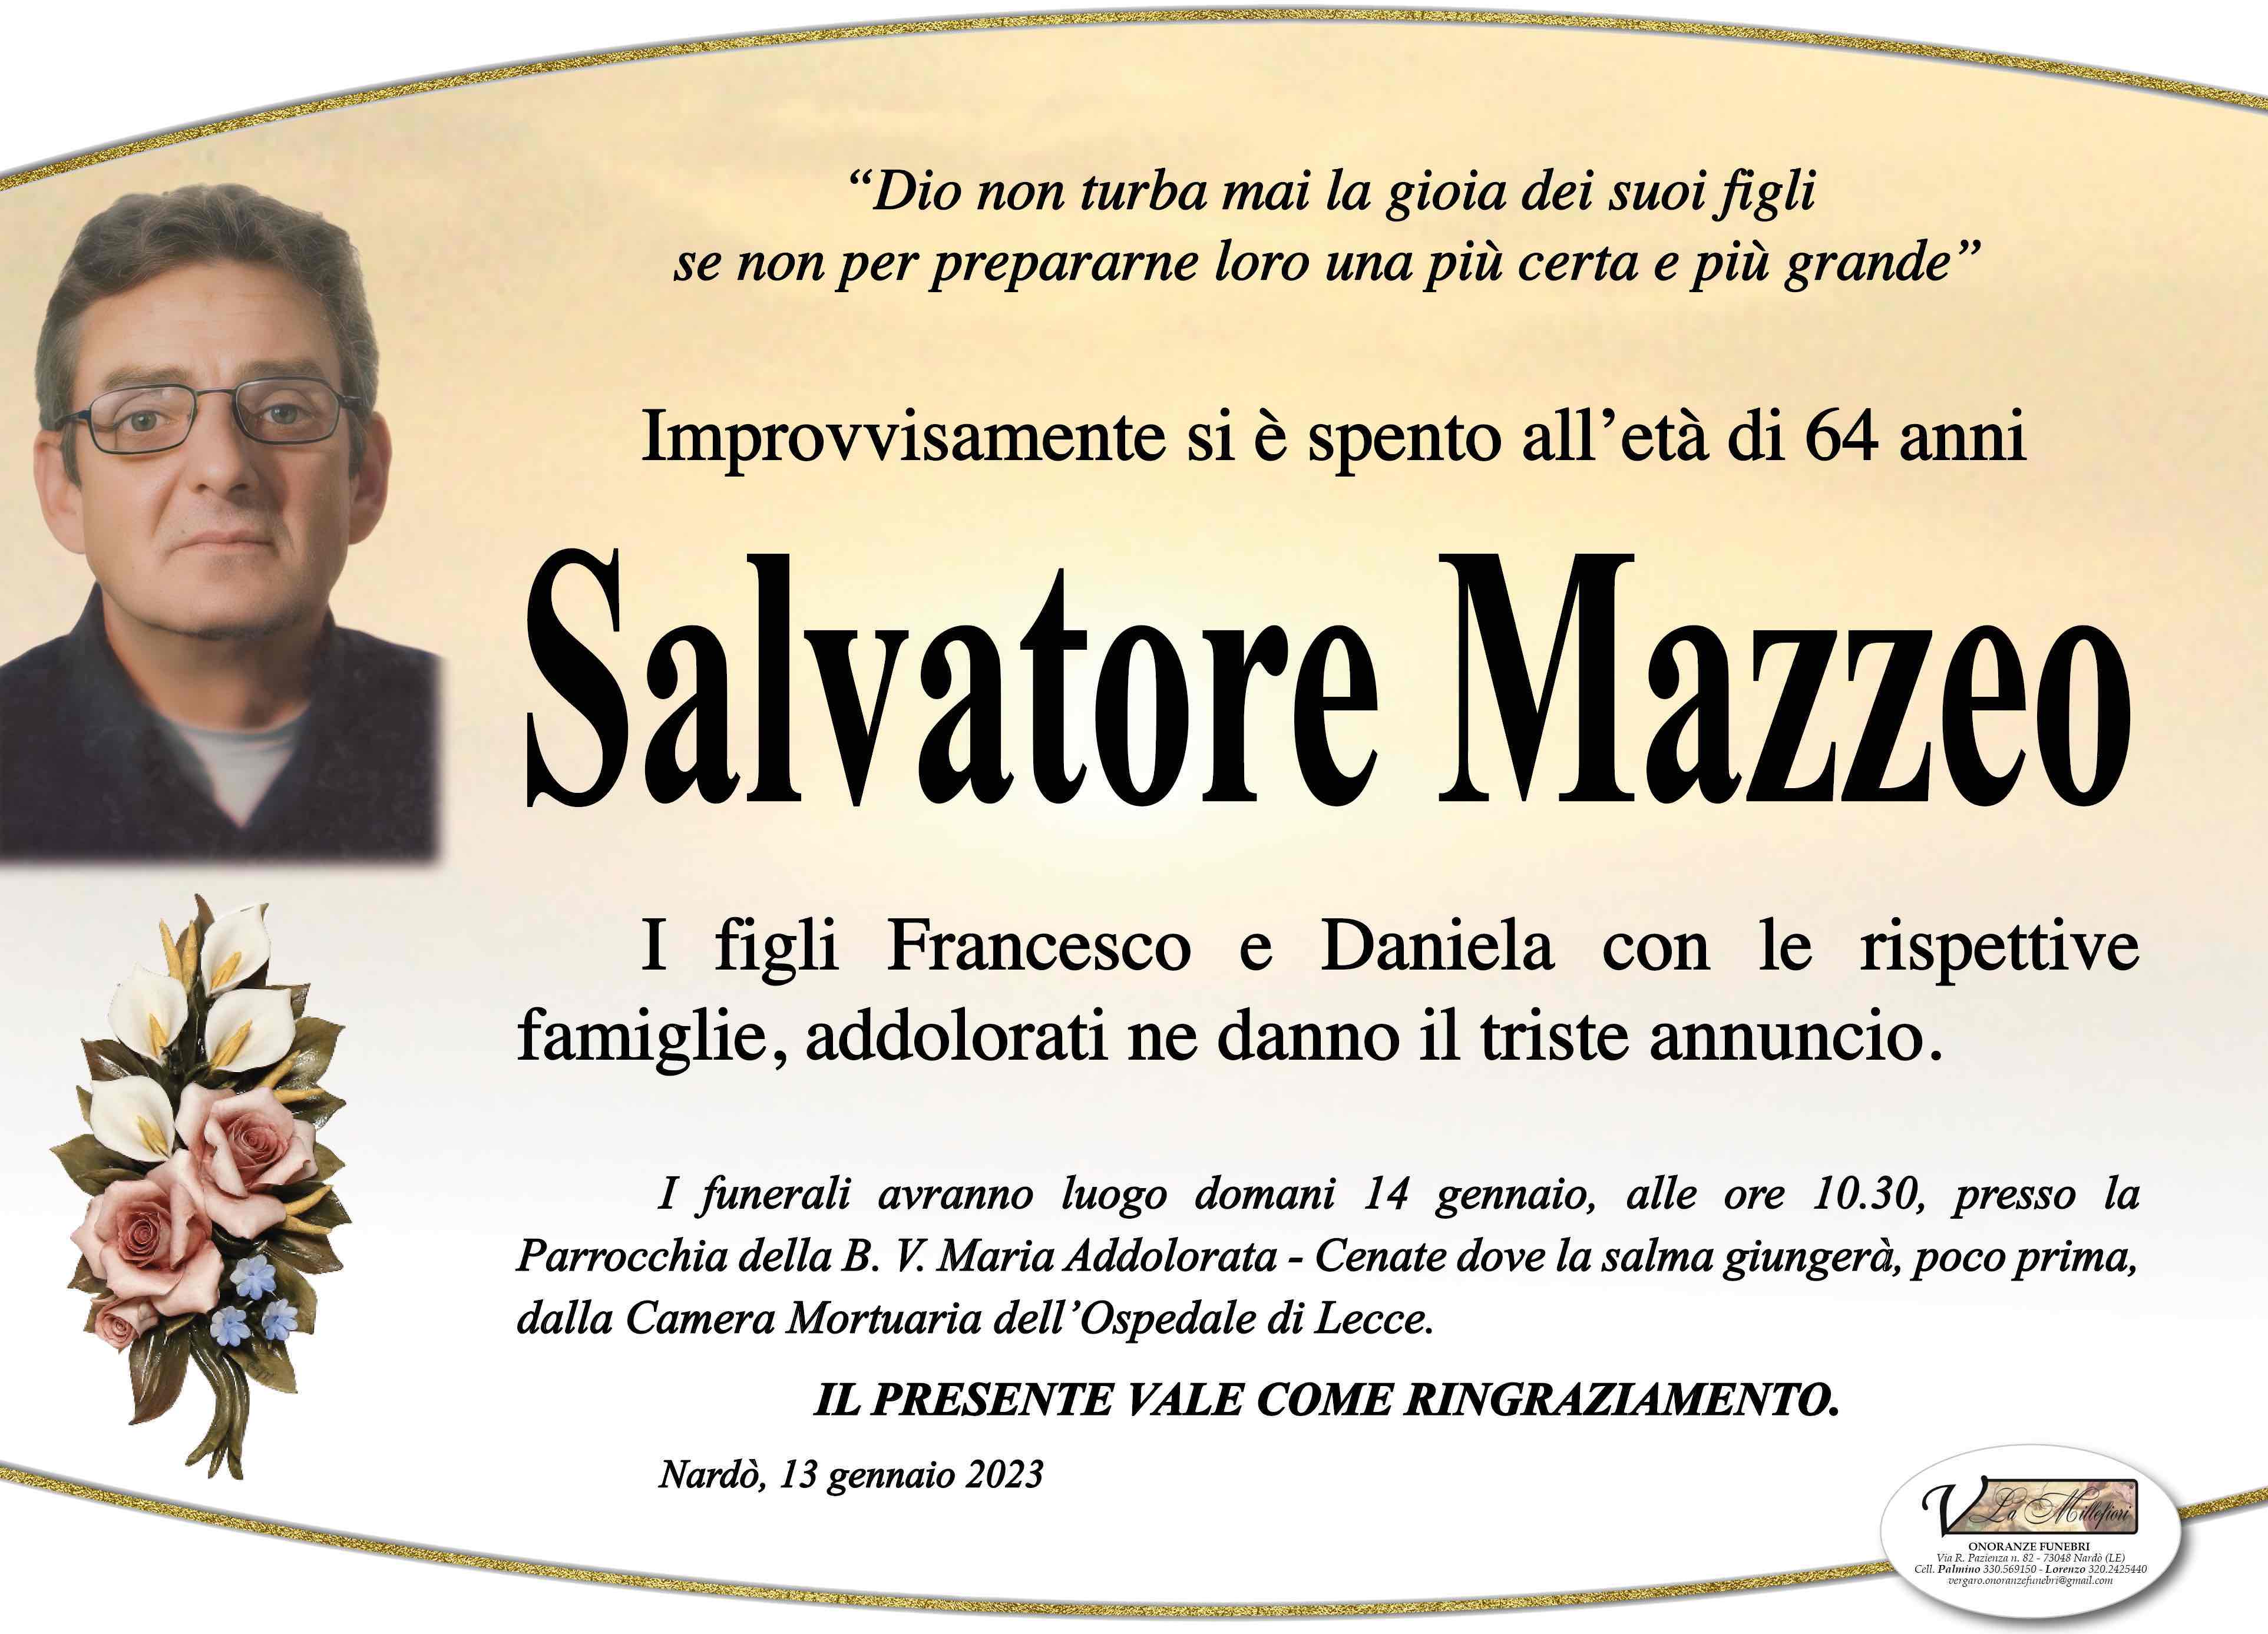 Salvatore Mazzeo